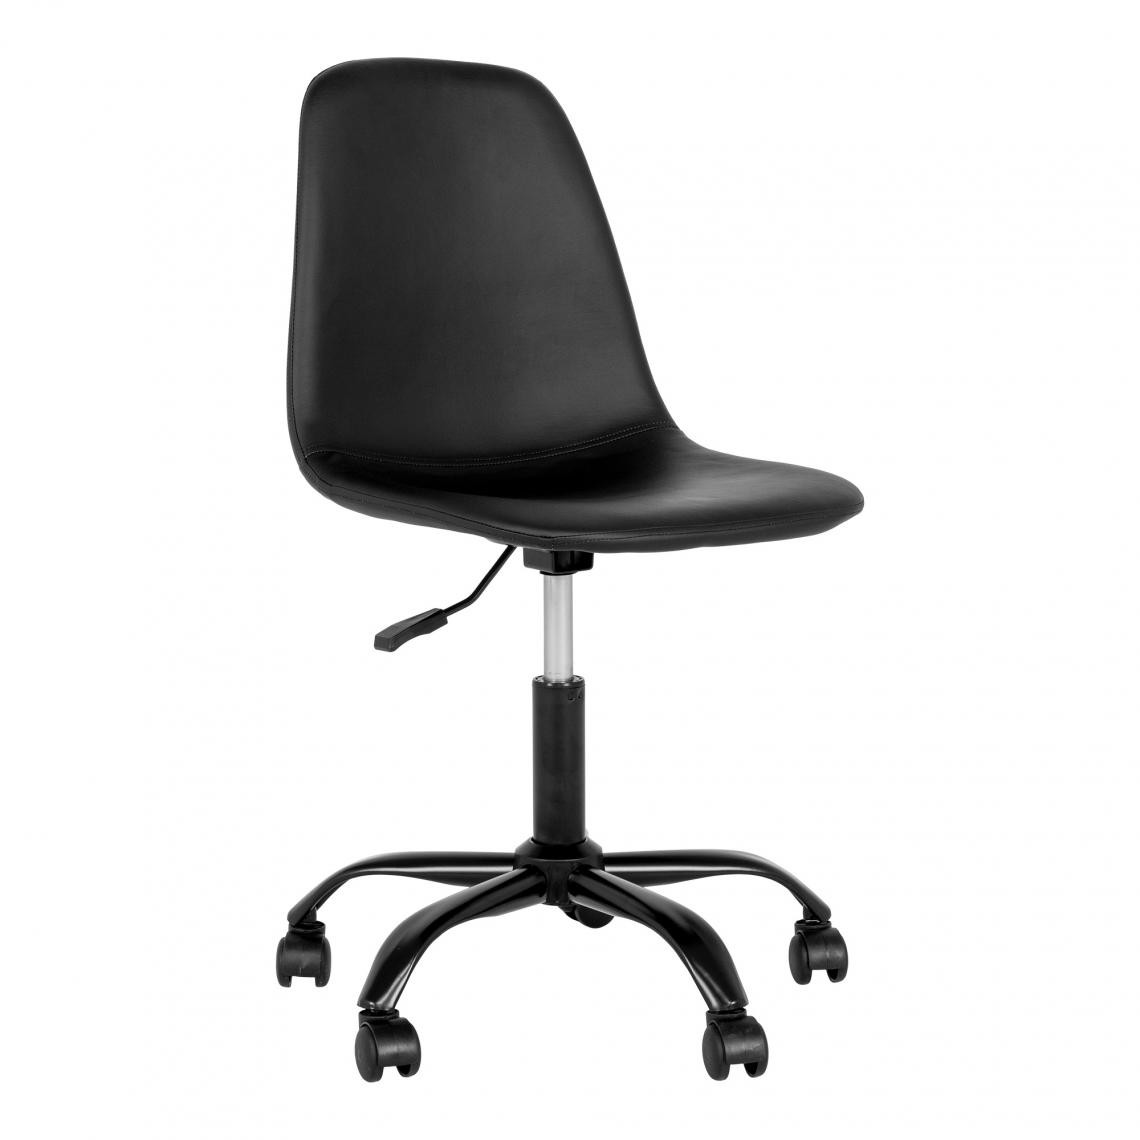 Pegane - Chaise de bureau en PU coloris noir - longueur 48 x profondeur 44 x hauteur 86-94 cm - Chaises